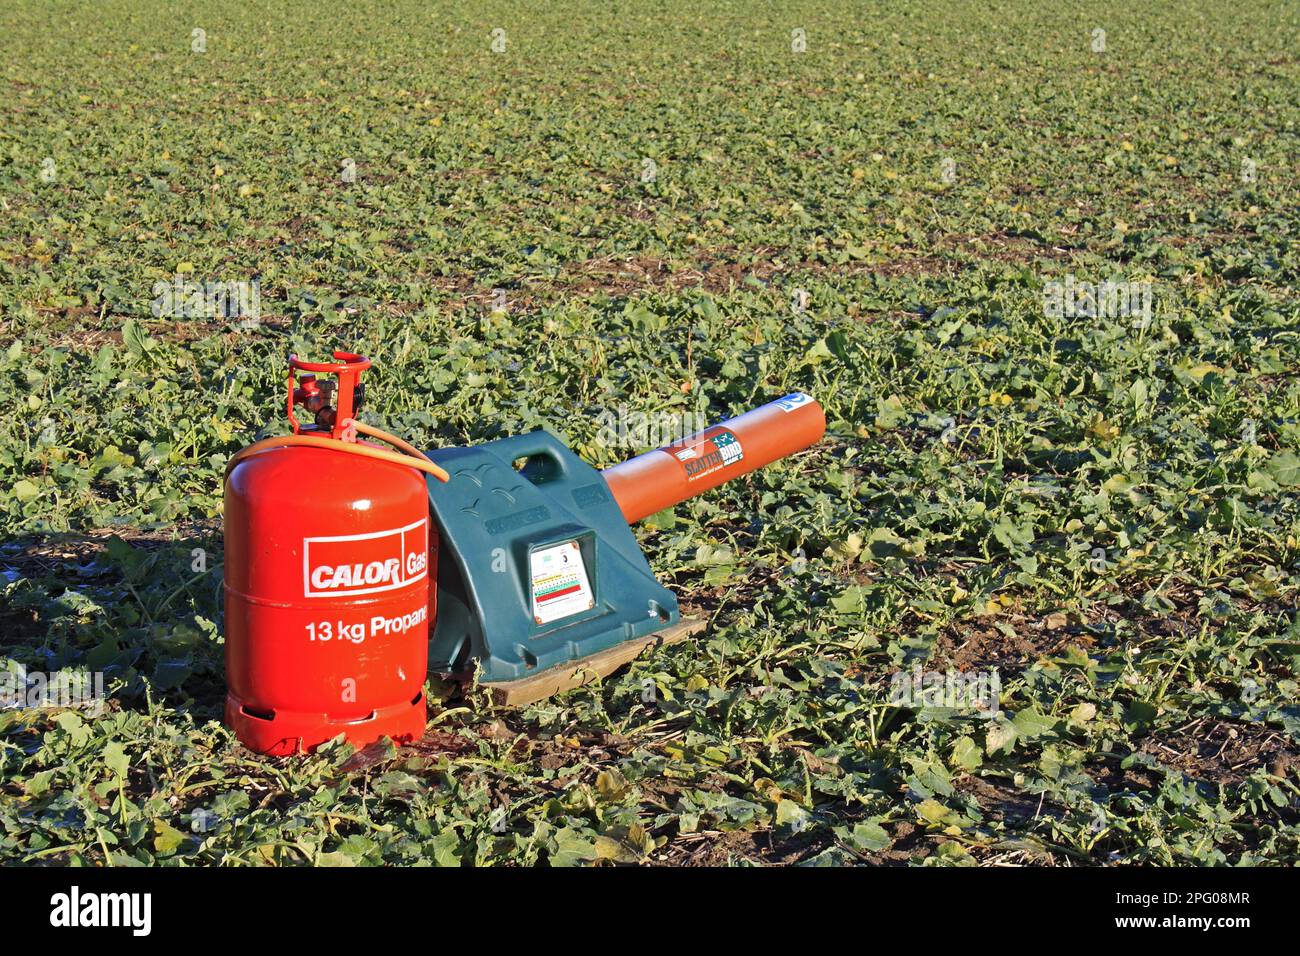 Gas-gun, gas powered bird scarer in Oilseed Rape (Brassica napus) crop, Thornham Magna, Suffolk, England, United Kingdom Stock Photo